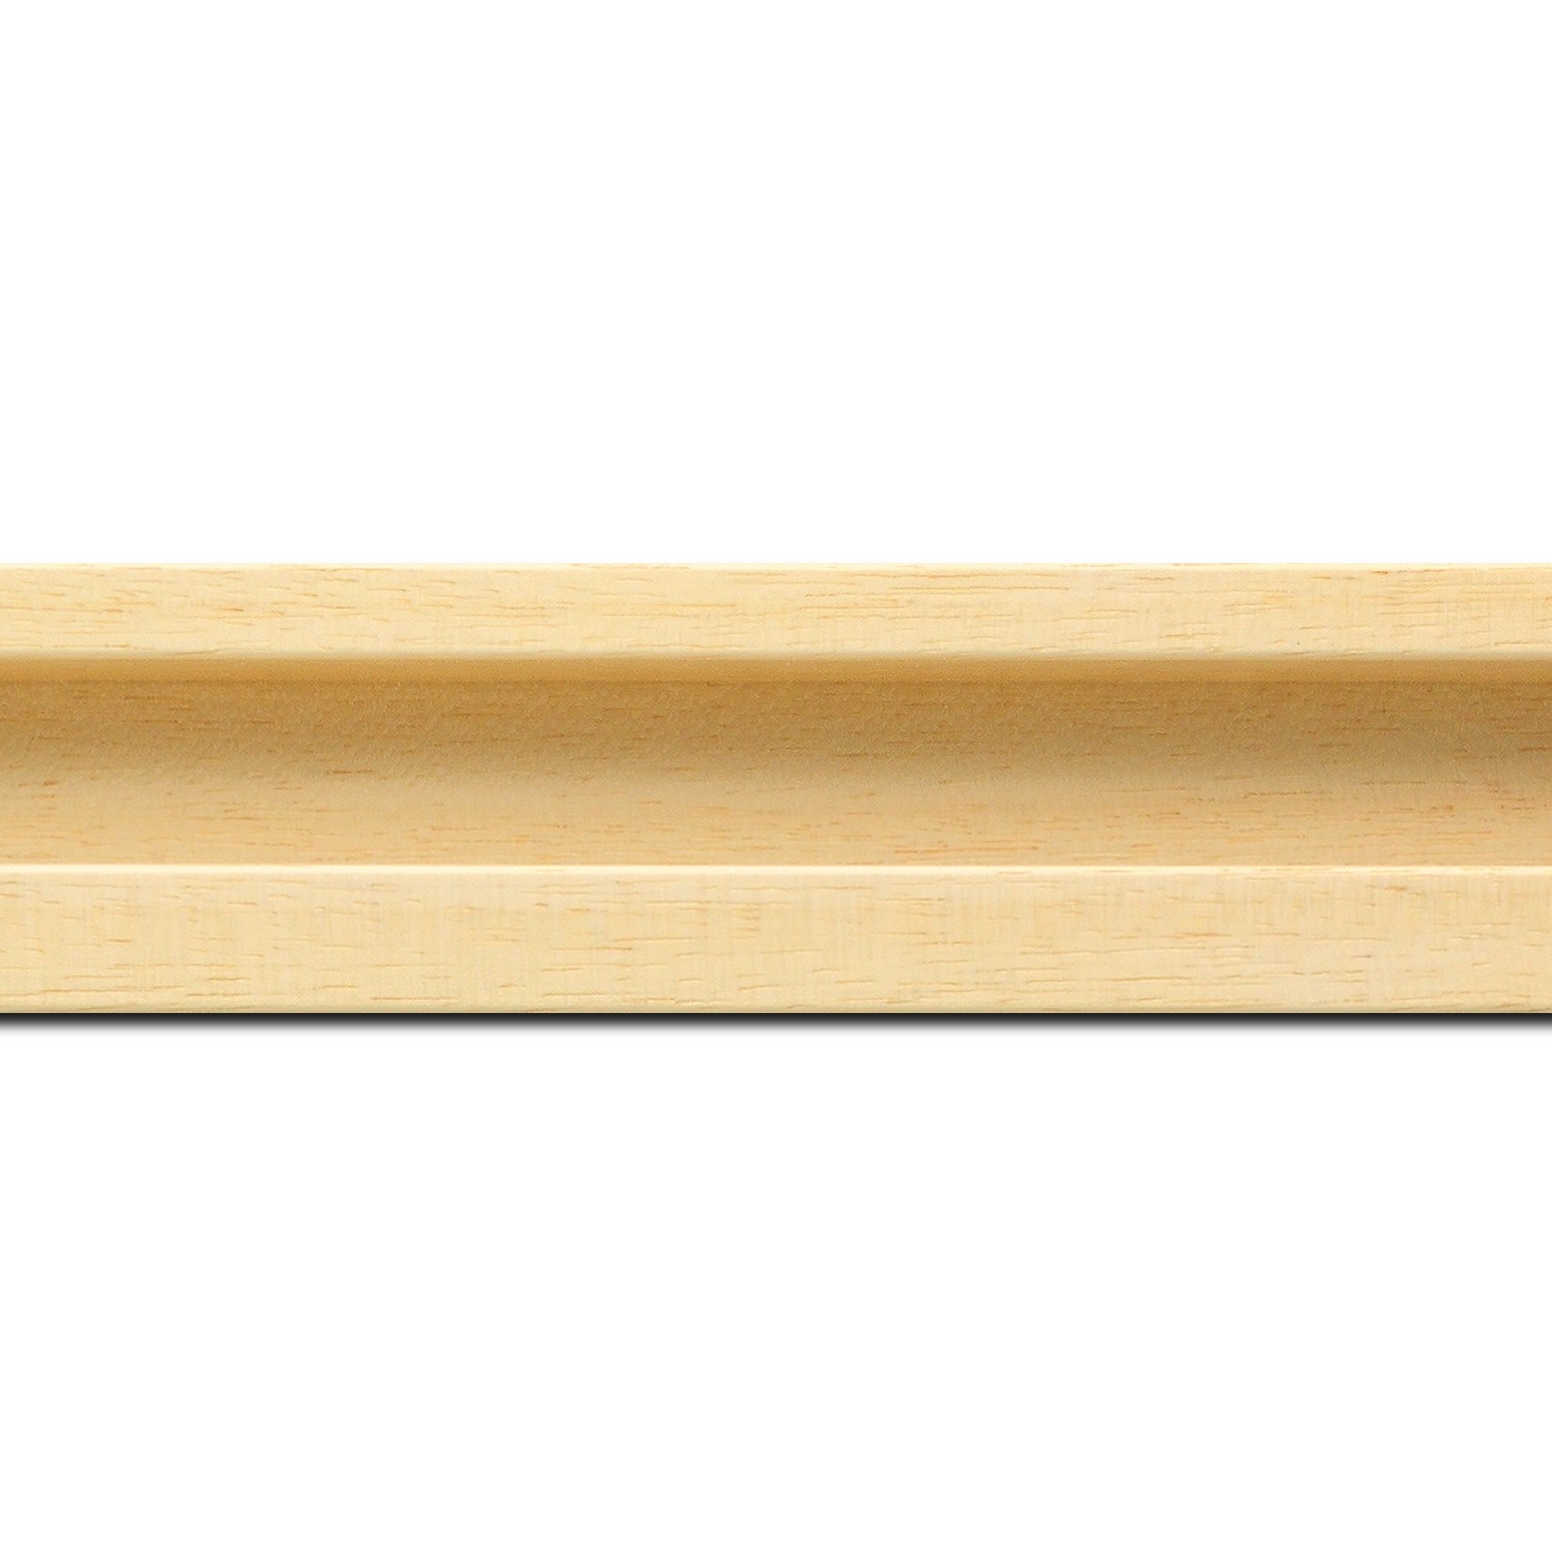 Pack par 12m, bois caisse américaine largeur 4.5cm naturel satiné (spécialement concu pour les supports papier necessitant une protection et un isorel assurant le maintien de l'ensemble  : le sujet se met à l'intérieur du cadre ) profil en u(longueur baguette pouvant varier entre 2.40m et 3m selon arrivage des bois)